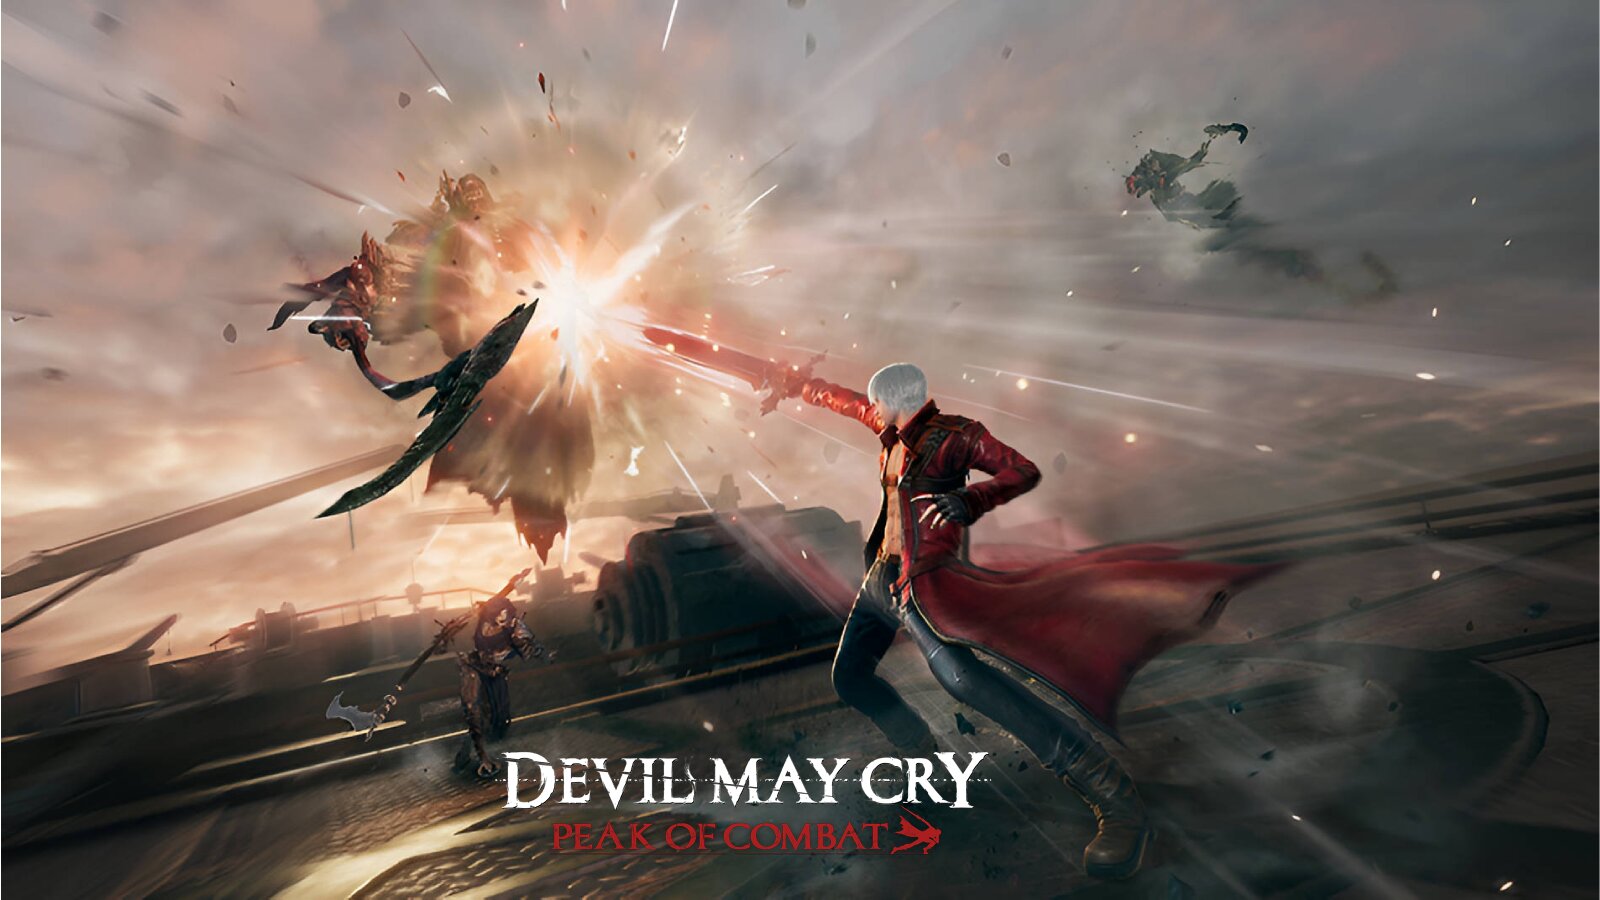 Devil May Cry 3 Peak of Combat, Vergil vs Dante Trailer